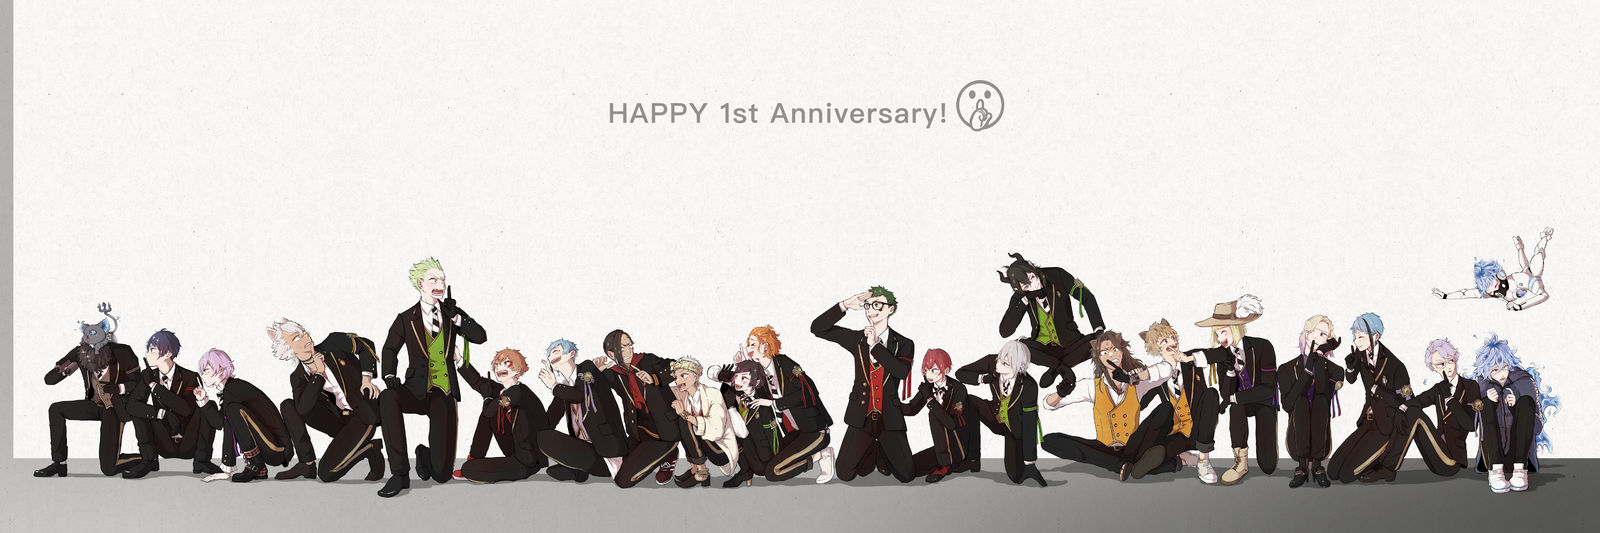 HAPPY 1st Anniversary !!插画图片壁纸